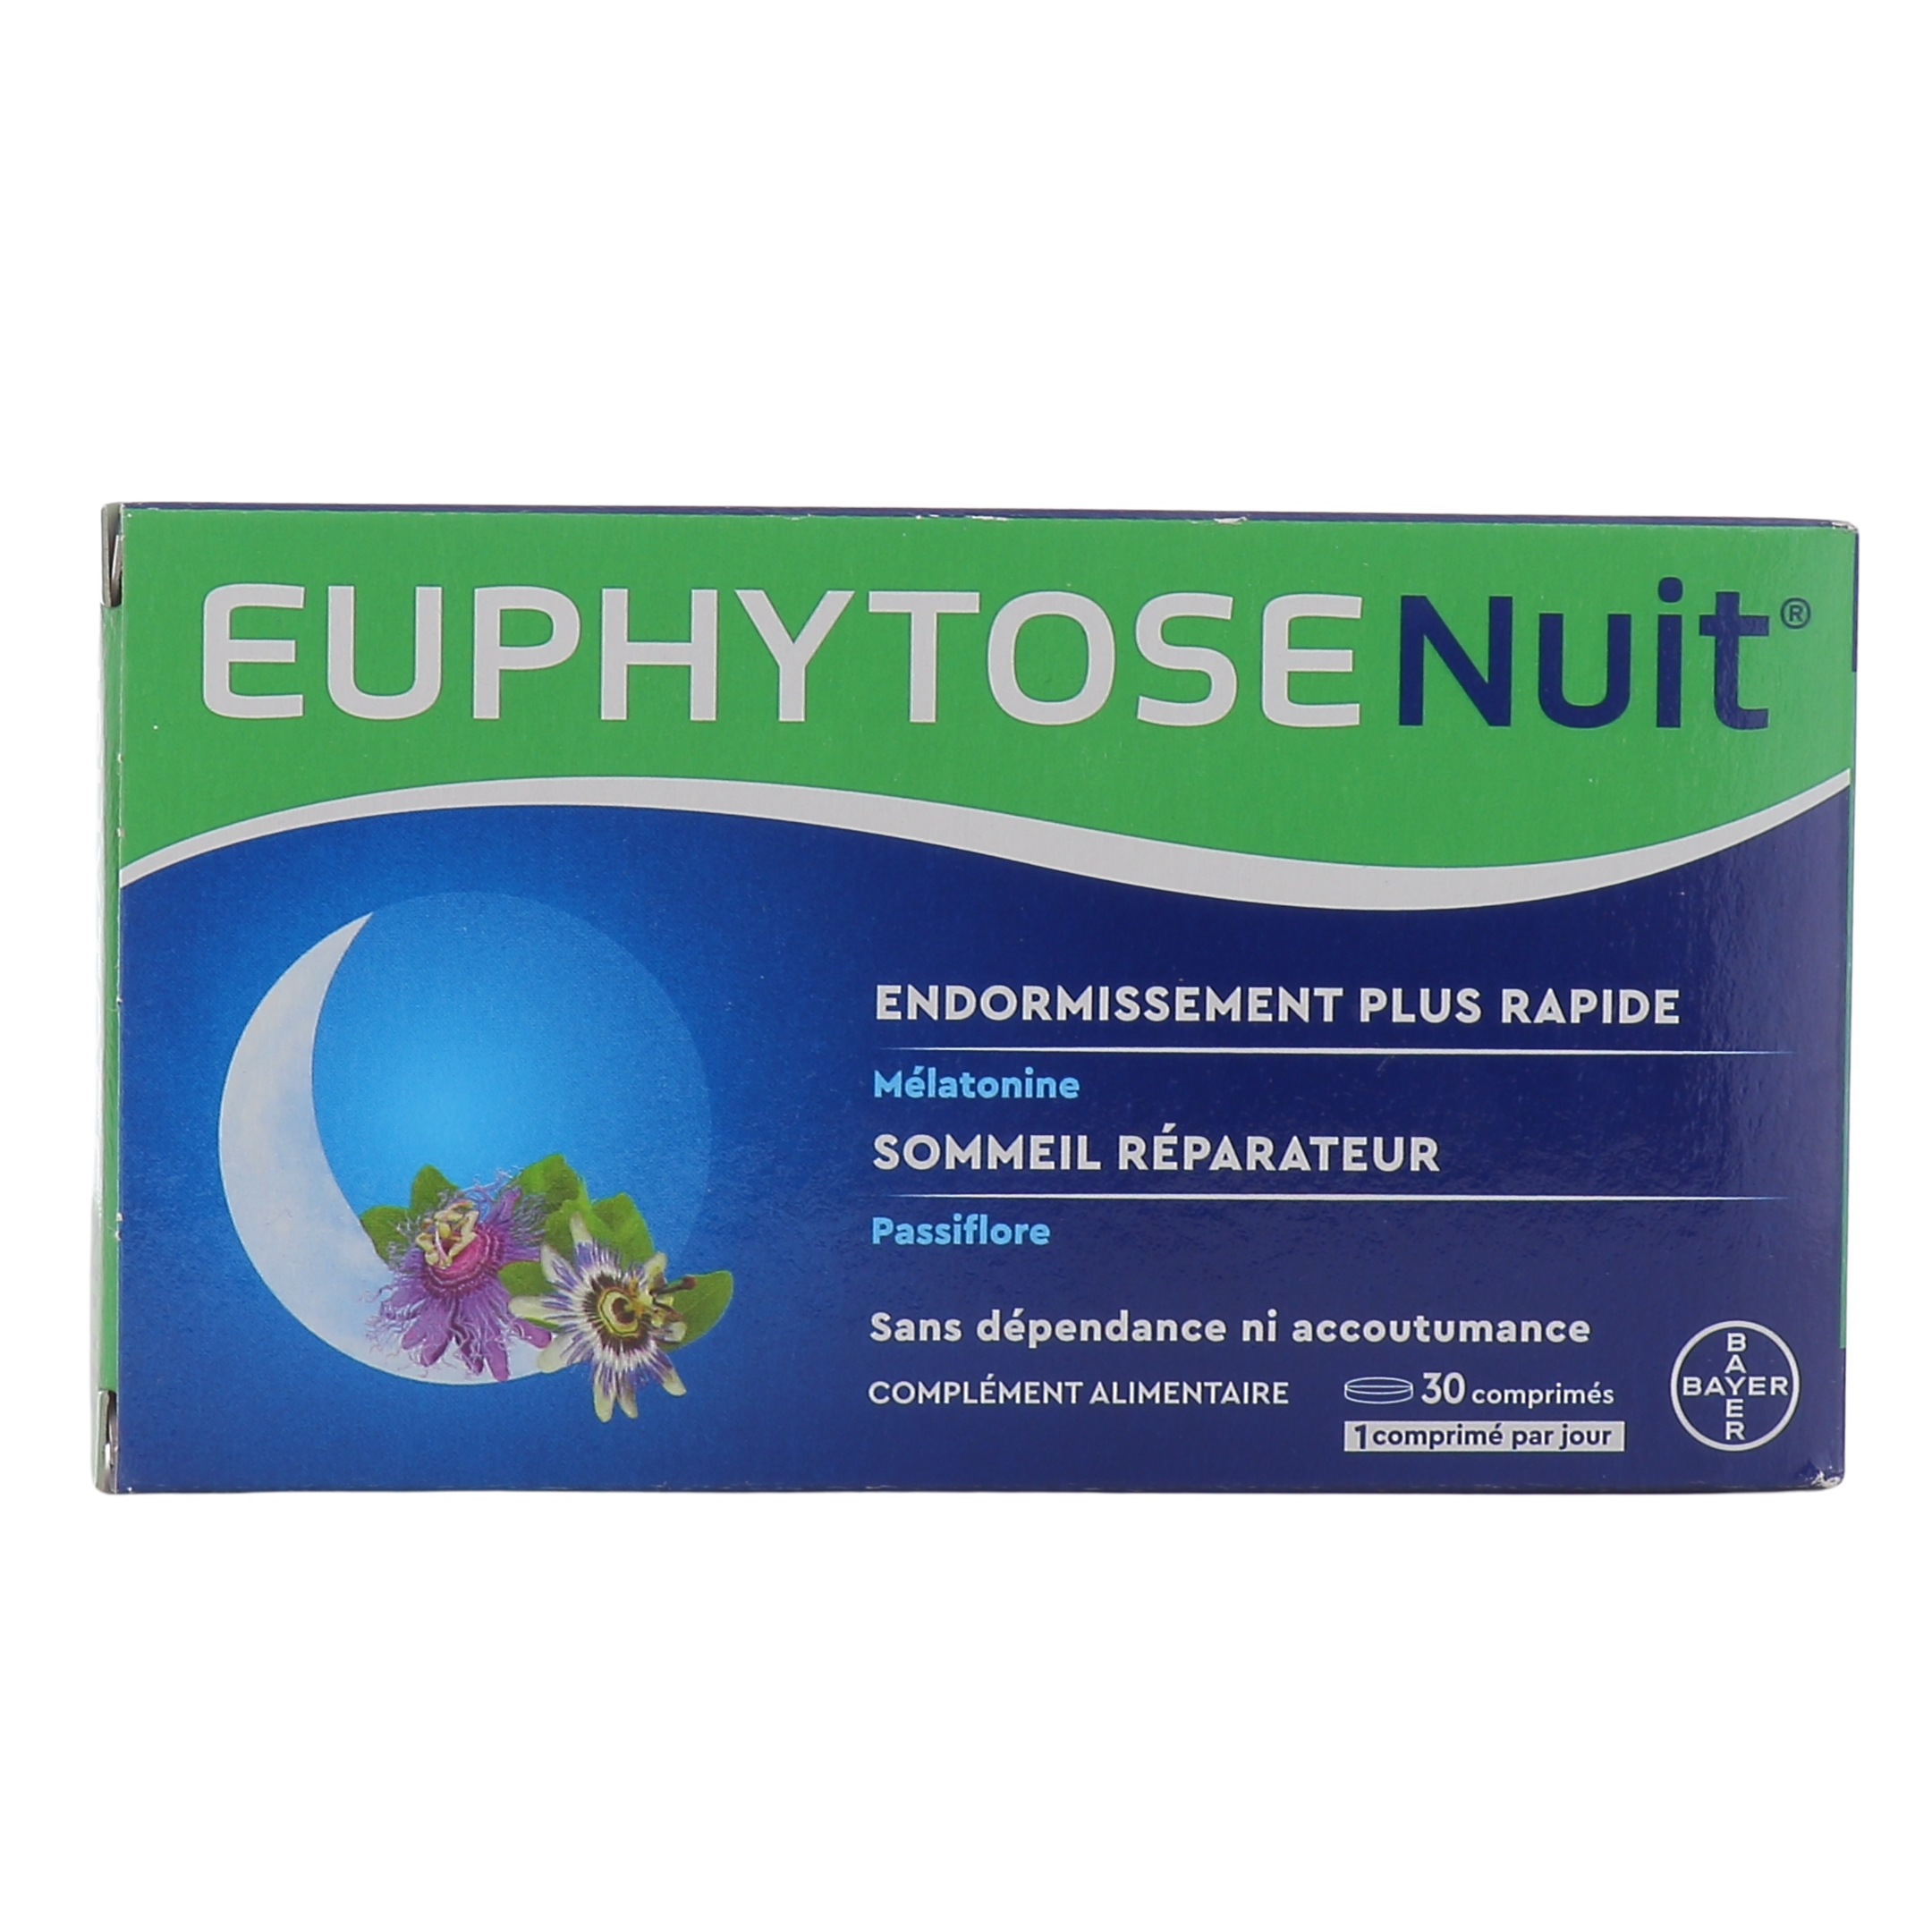 Euphytose : traitement pour le stress et le sommeil